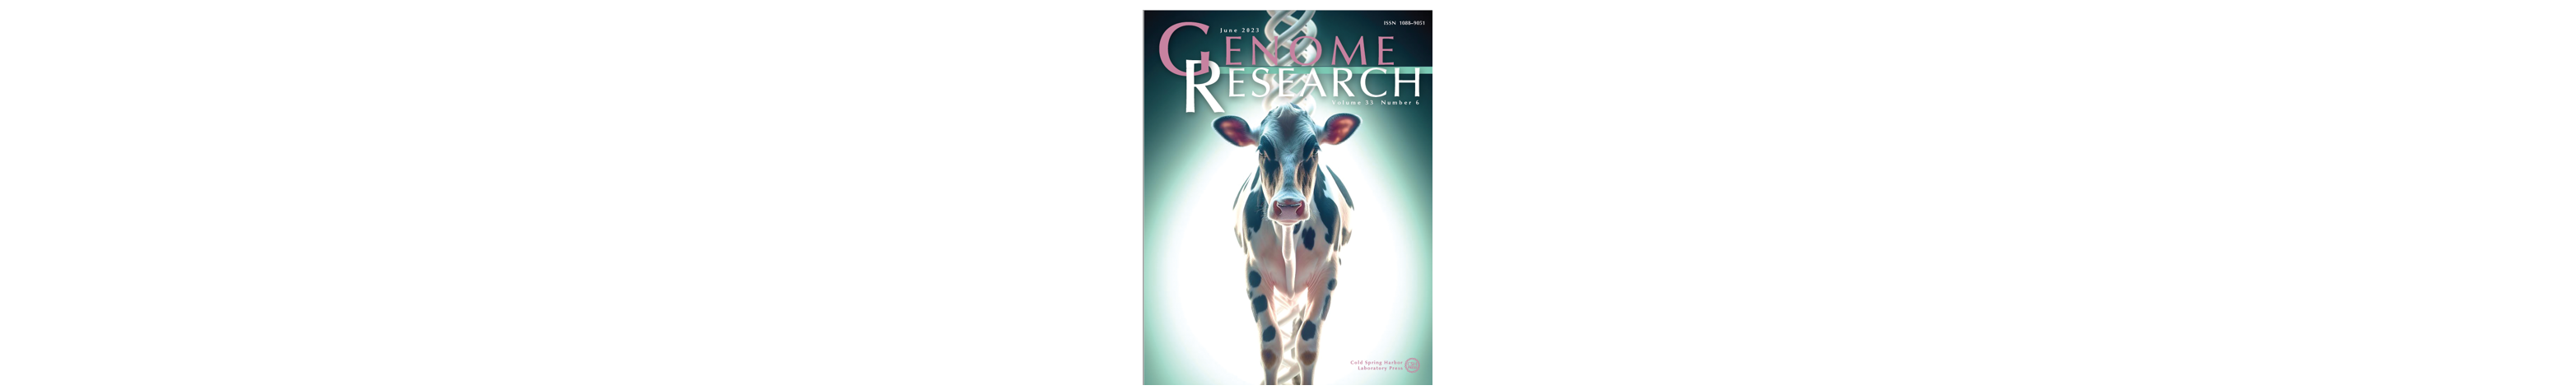 Un article publié par des chercheurs de l'UMR GABI a illustré la couverture de la revue scientifique Genome Research